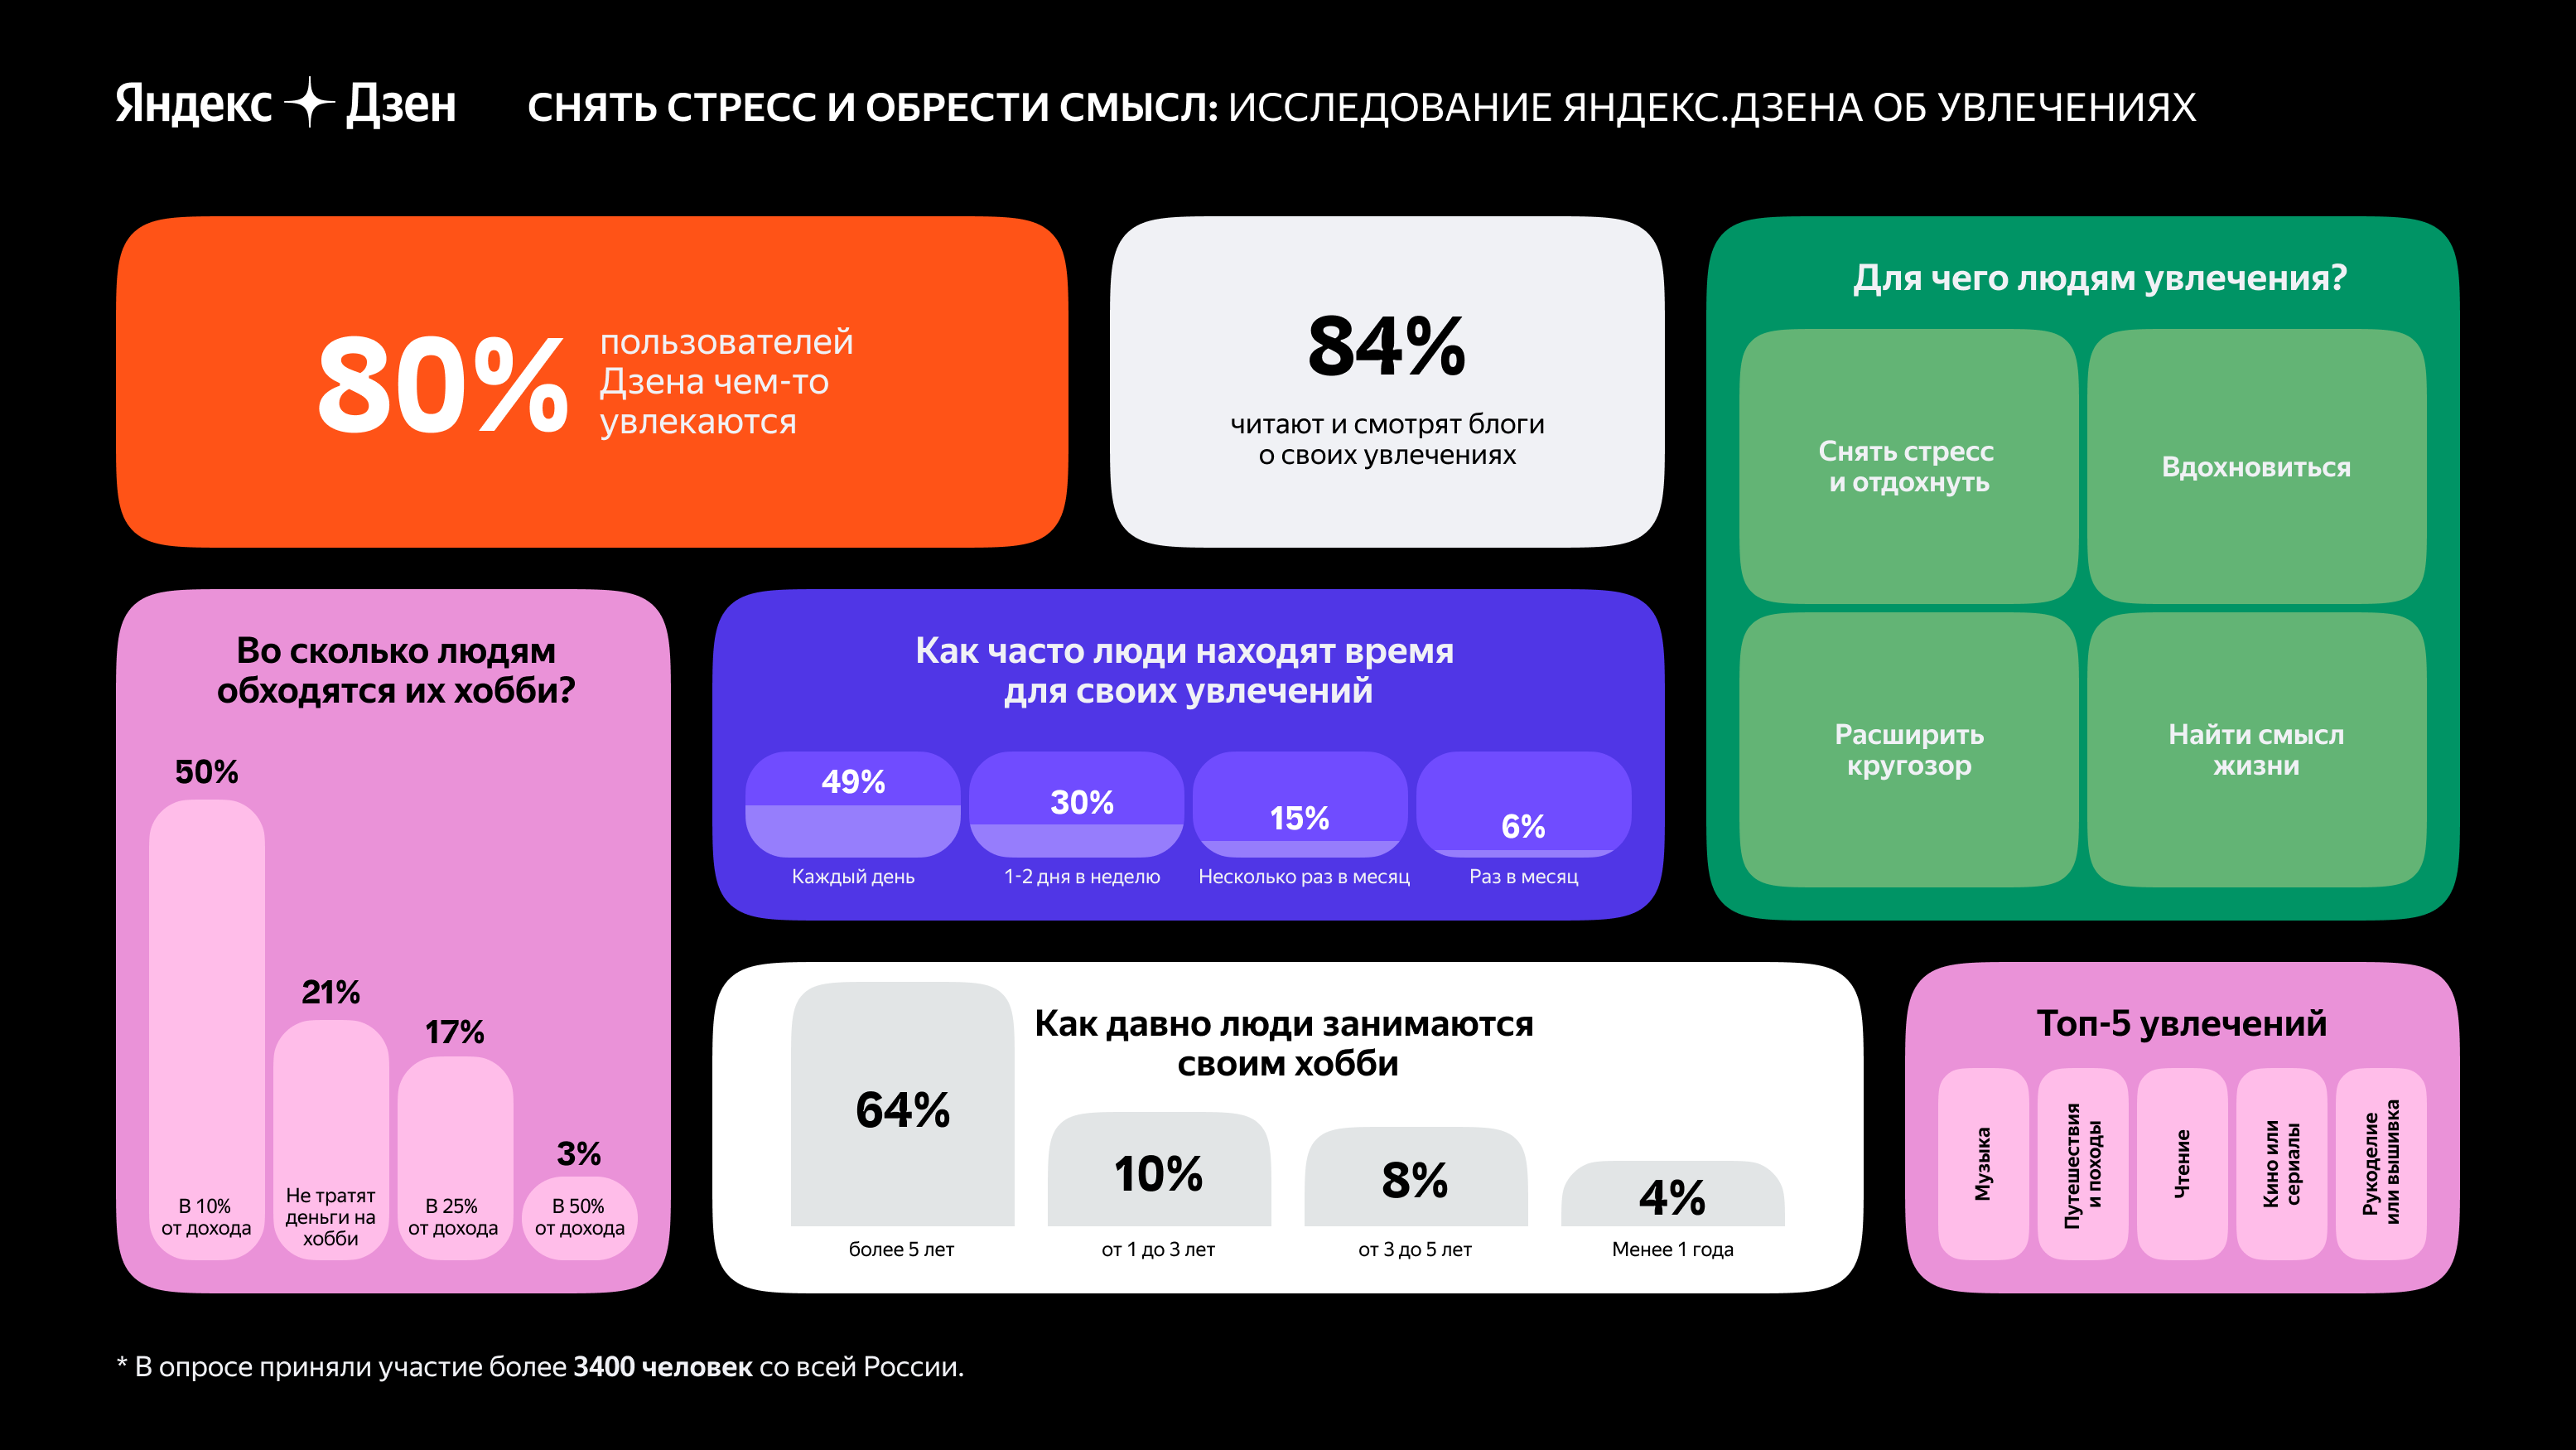 «Яндекс.Дзен» узнал, что 80% россиян имеют увлечения 